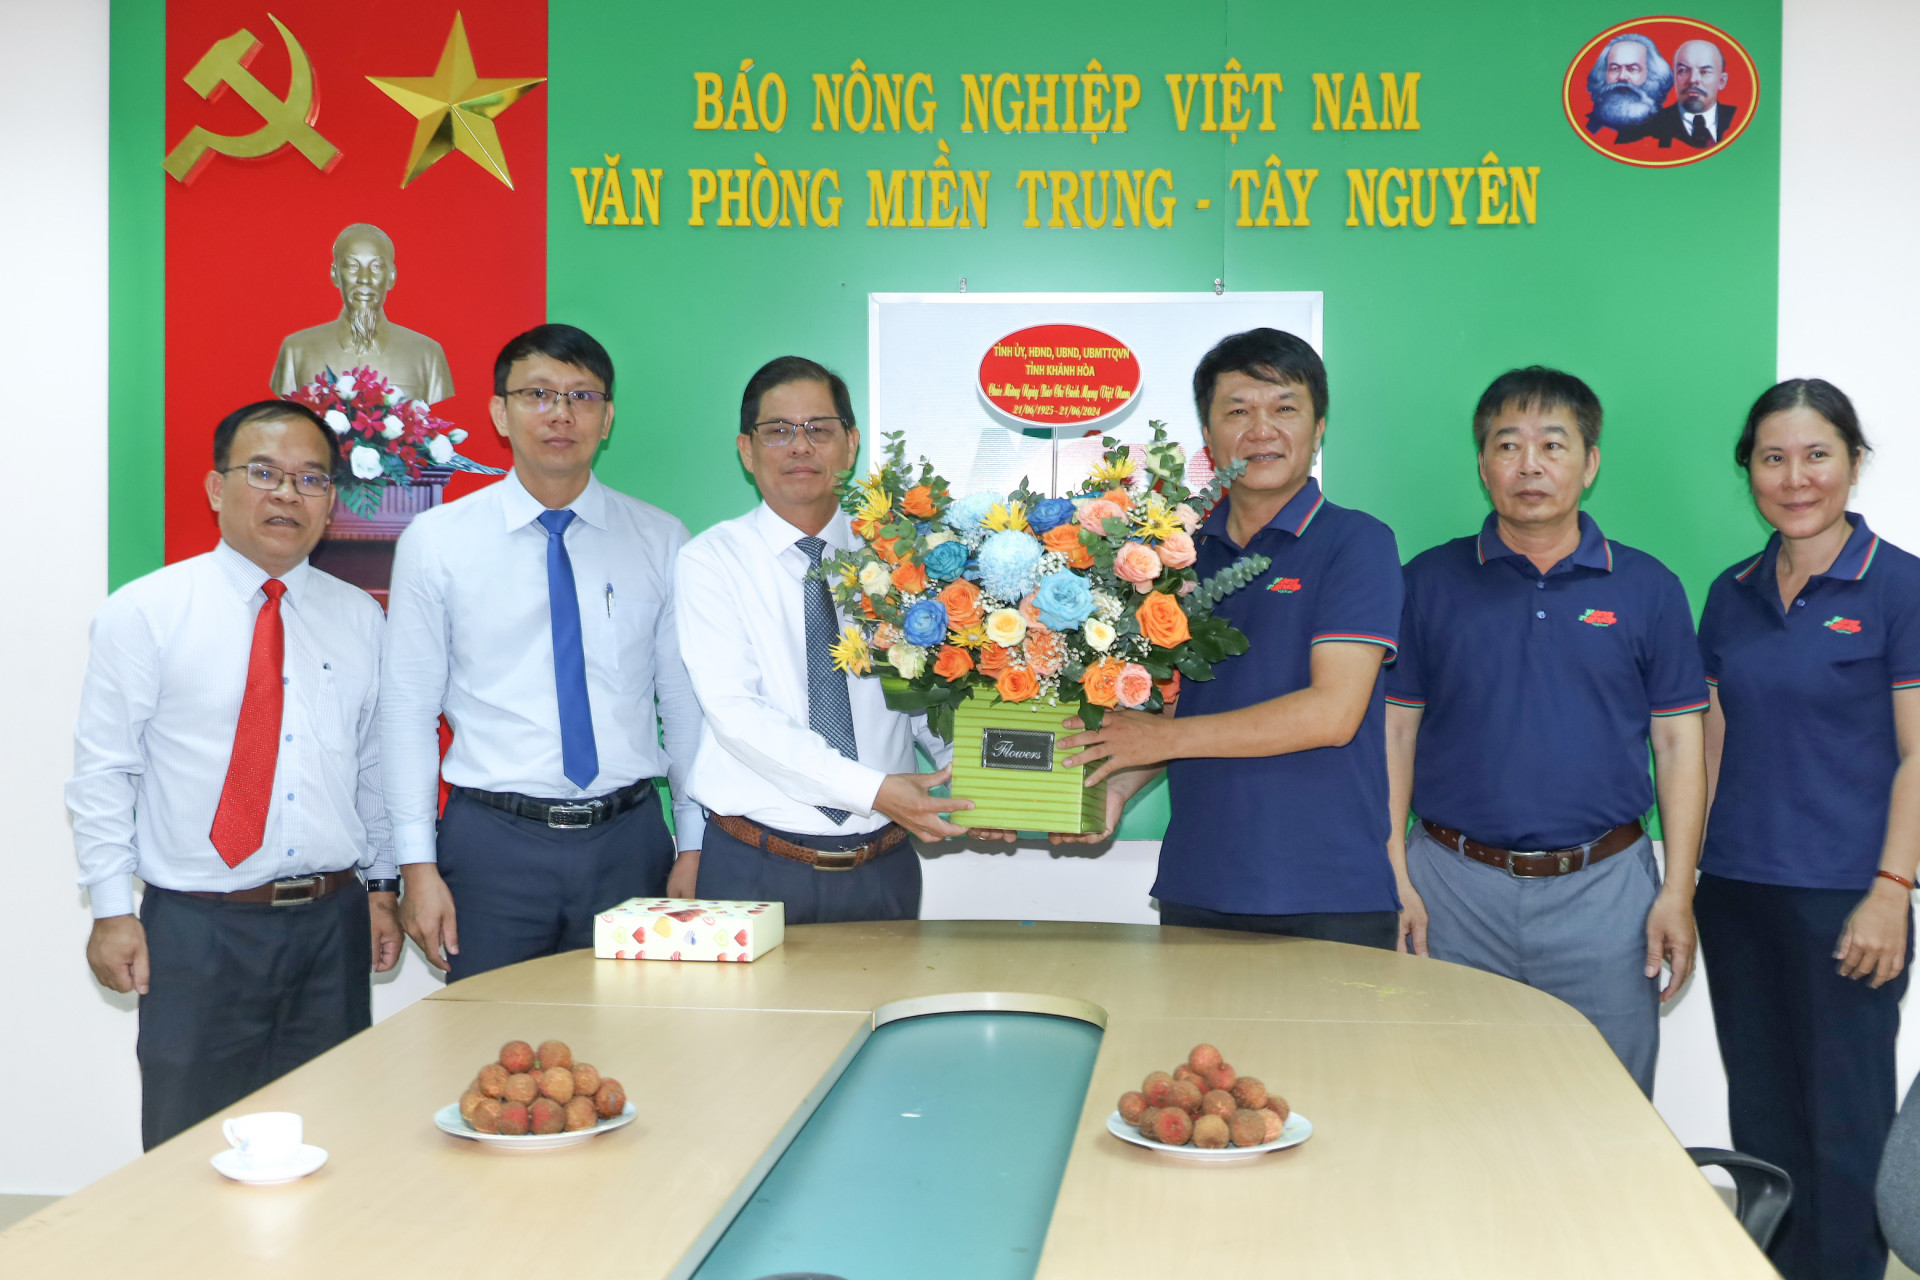 Đồng chí Nguyễn Tấn Tuân tặng hoa chúc mừng tập thể Văn phòng Miền Trung - Tây Nguyên của Báo Nông nghiệp Việt Nam.